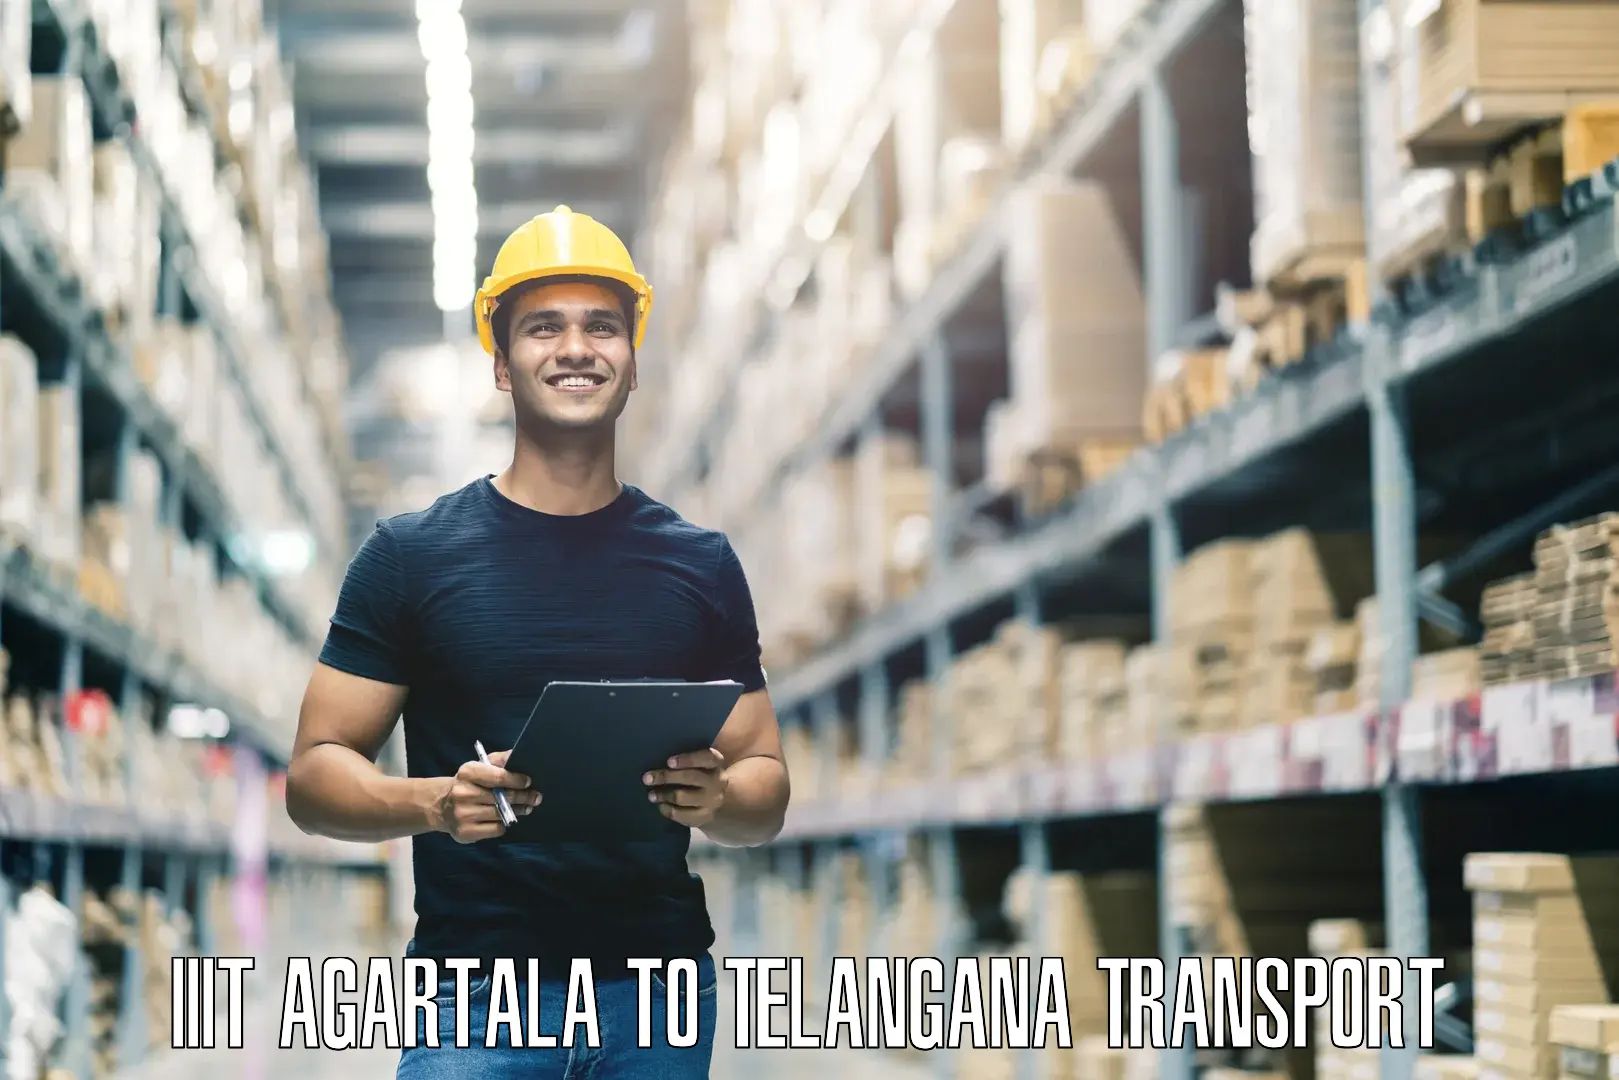 Nearby transport service IIIT Agartala to Metpally